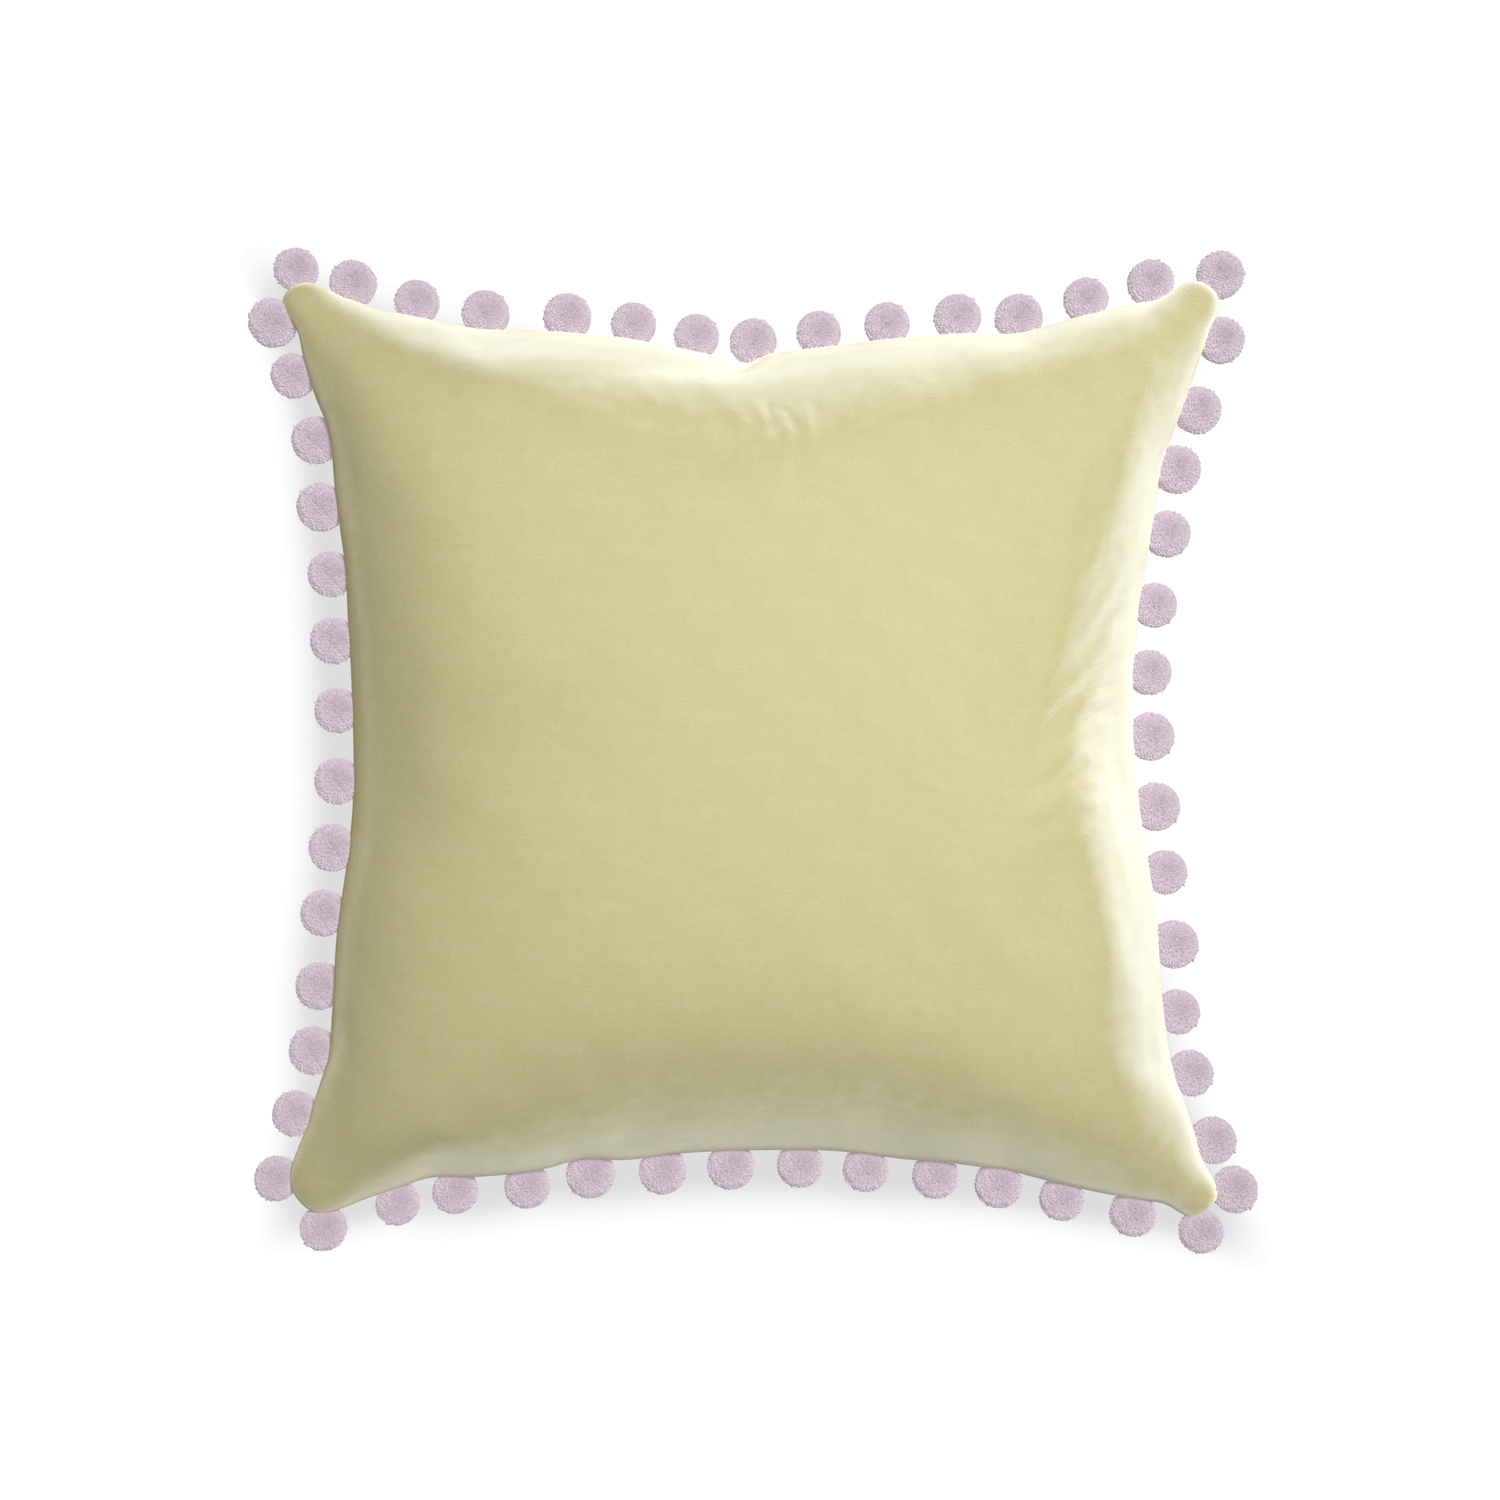 20-square pear velvet custom pillow with l on white background